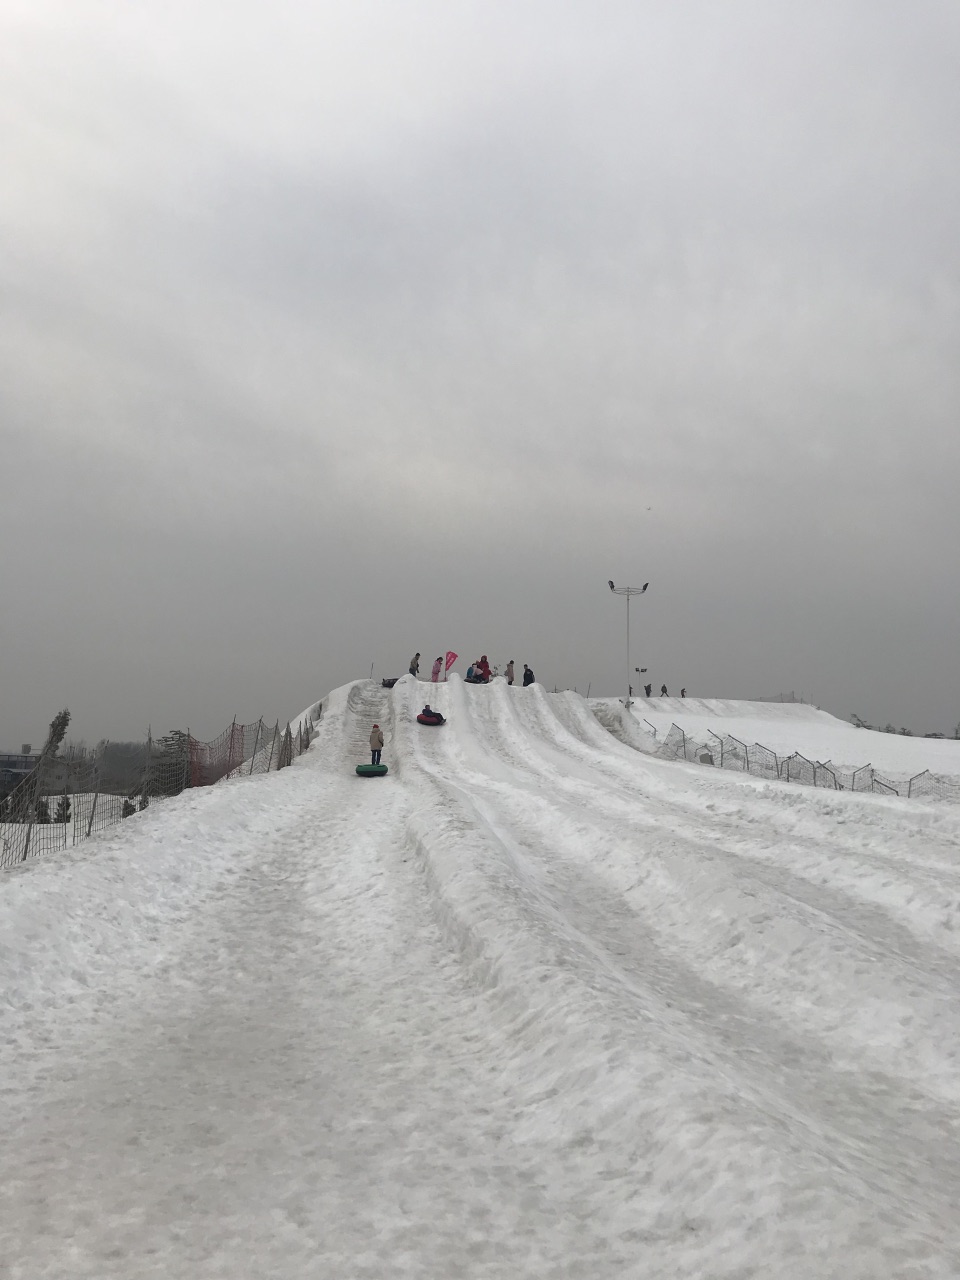 皇家香草园滑雪场图片